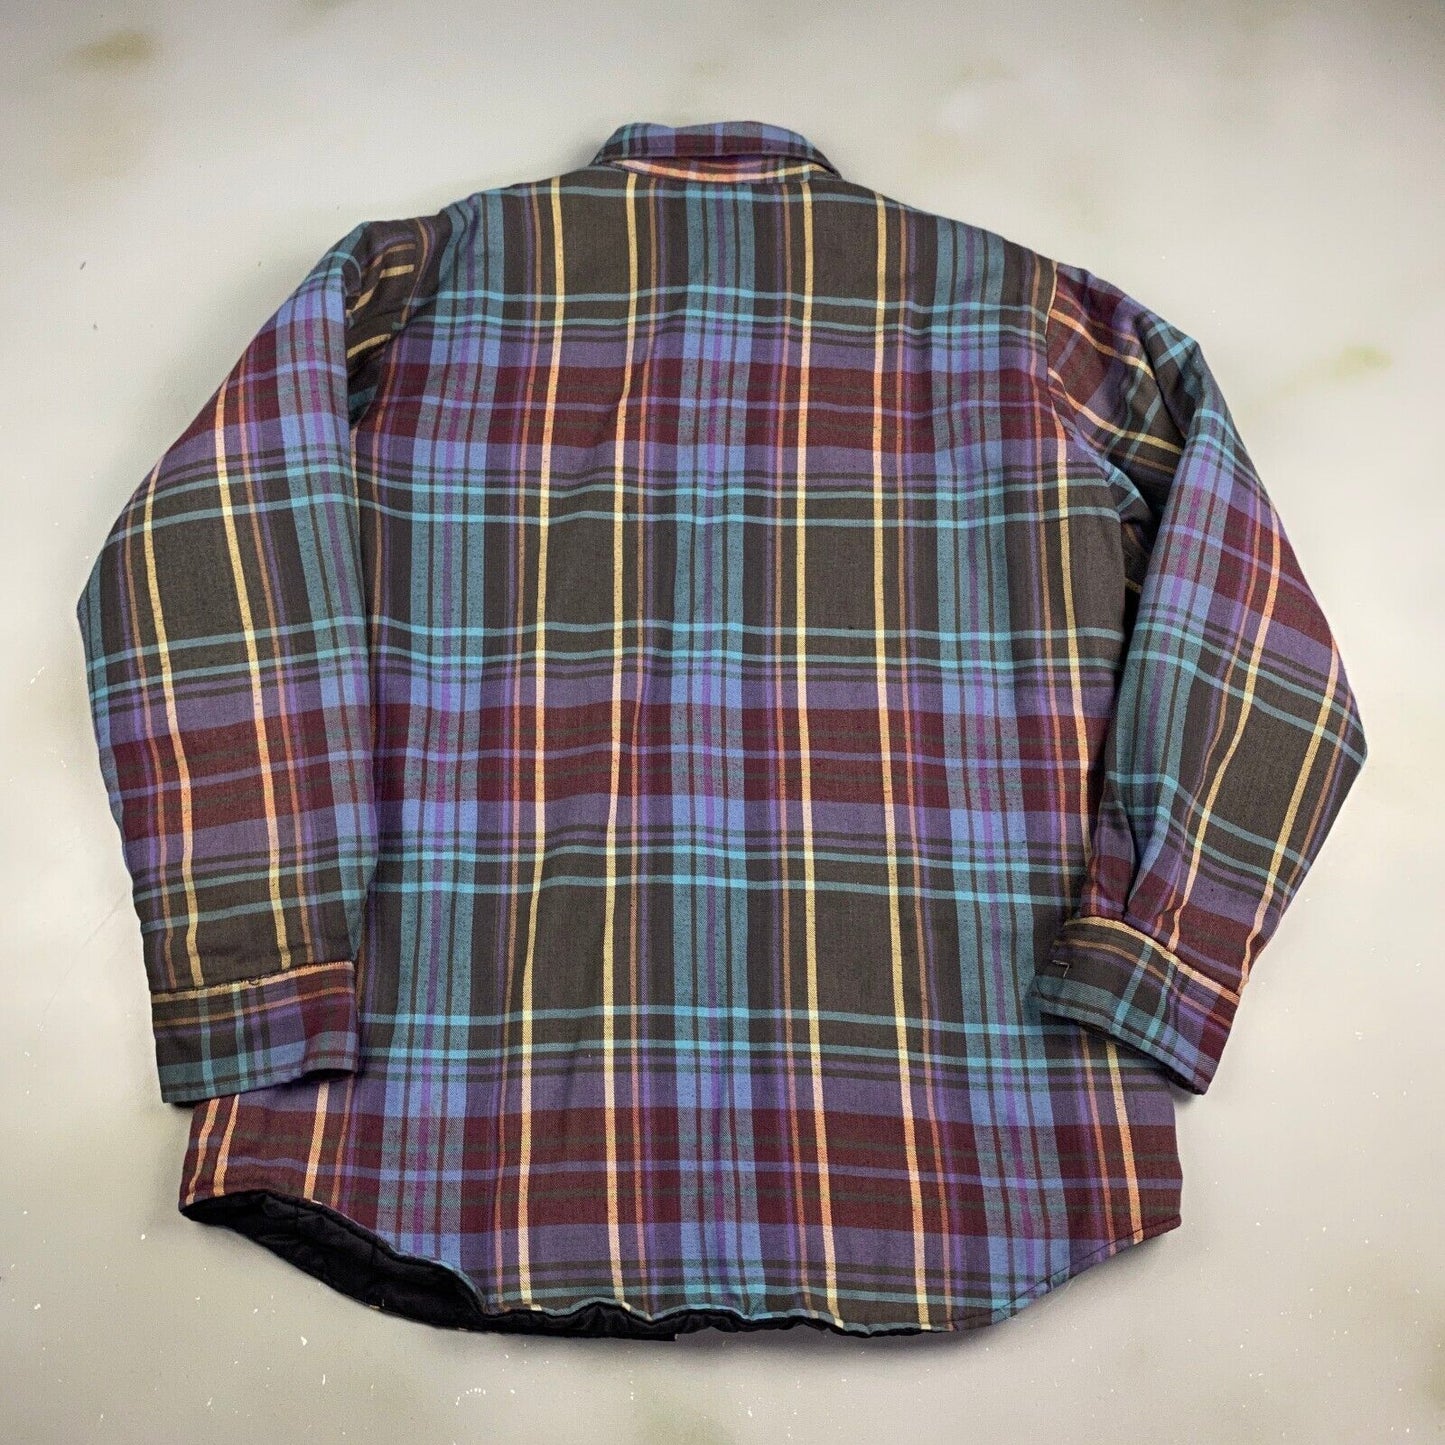 VINTAGE 90s Coleman Plaid Flannel Lined Button Up Shirt sz M-L Adult